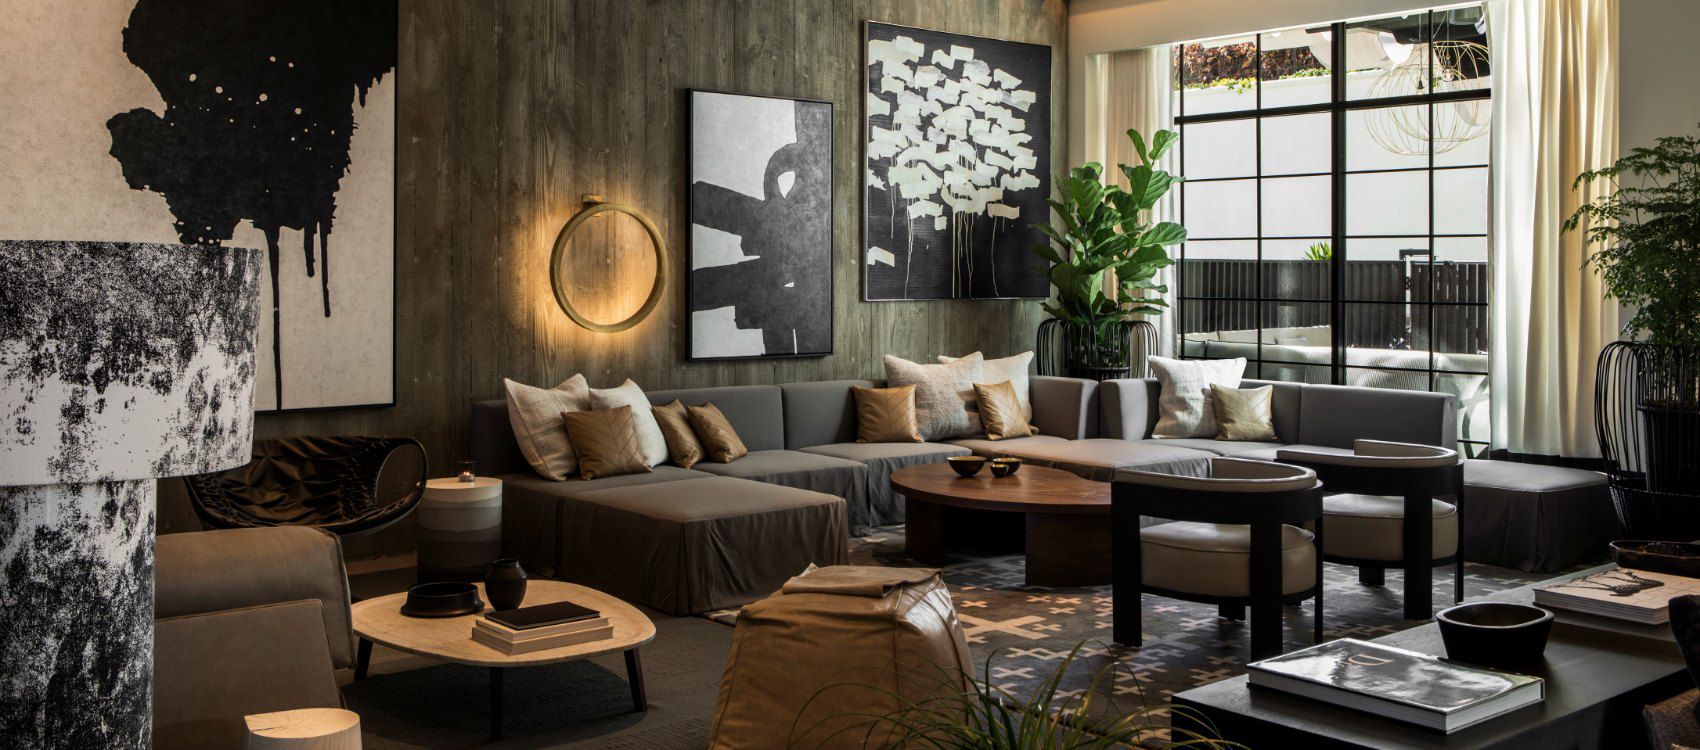 Lobby-Wohnzimmer mit markantem schwarz-weißem Dekor und moderner Atmosphäre